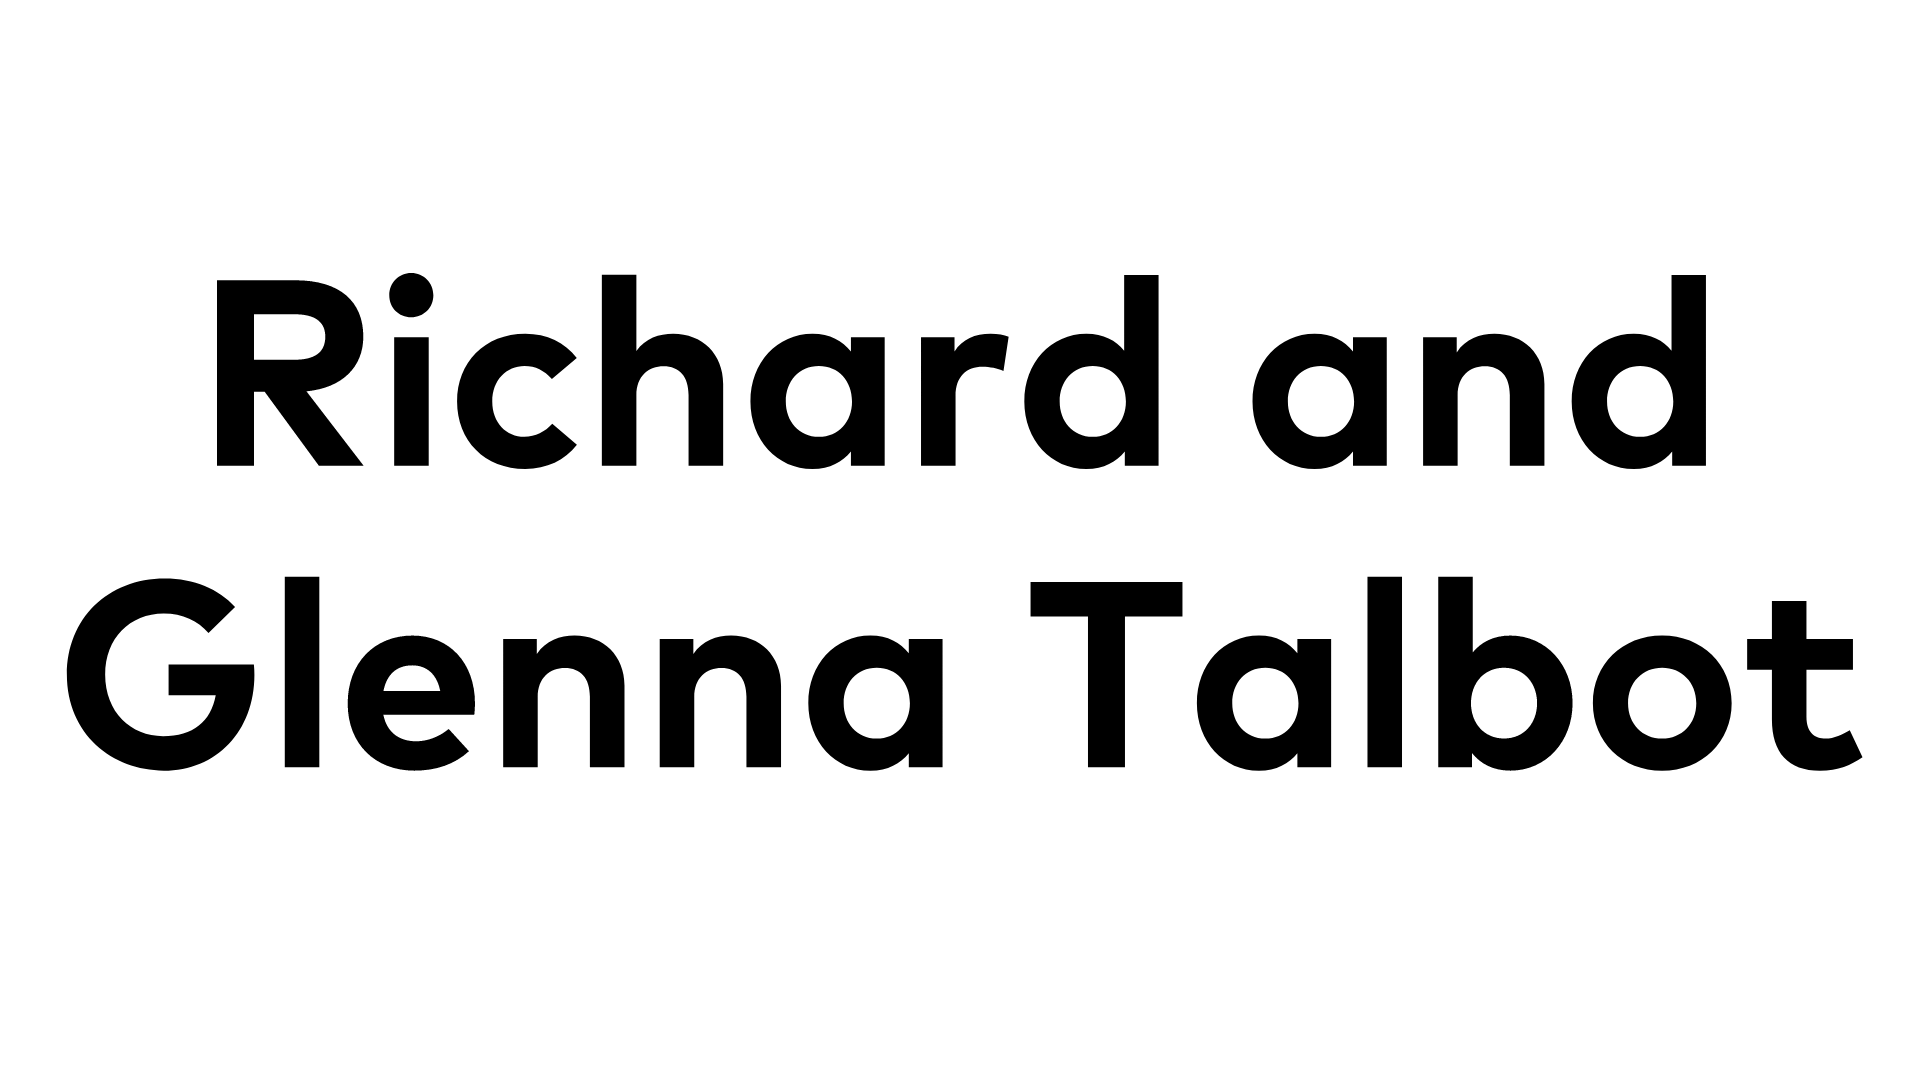 Richard and Glenna Talbot Richard and Glenna Talbot